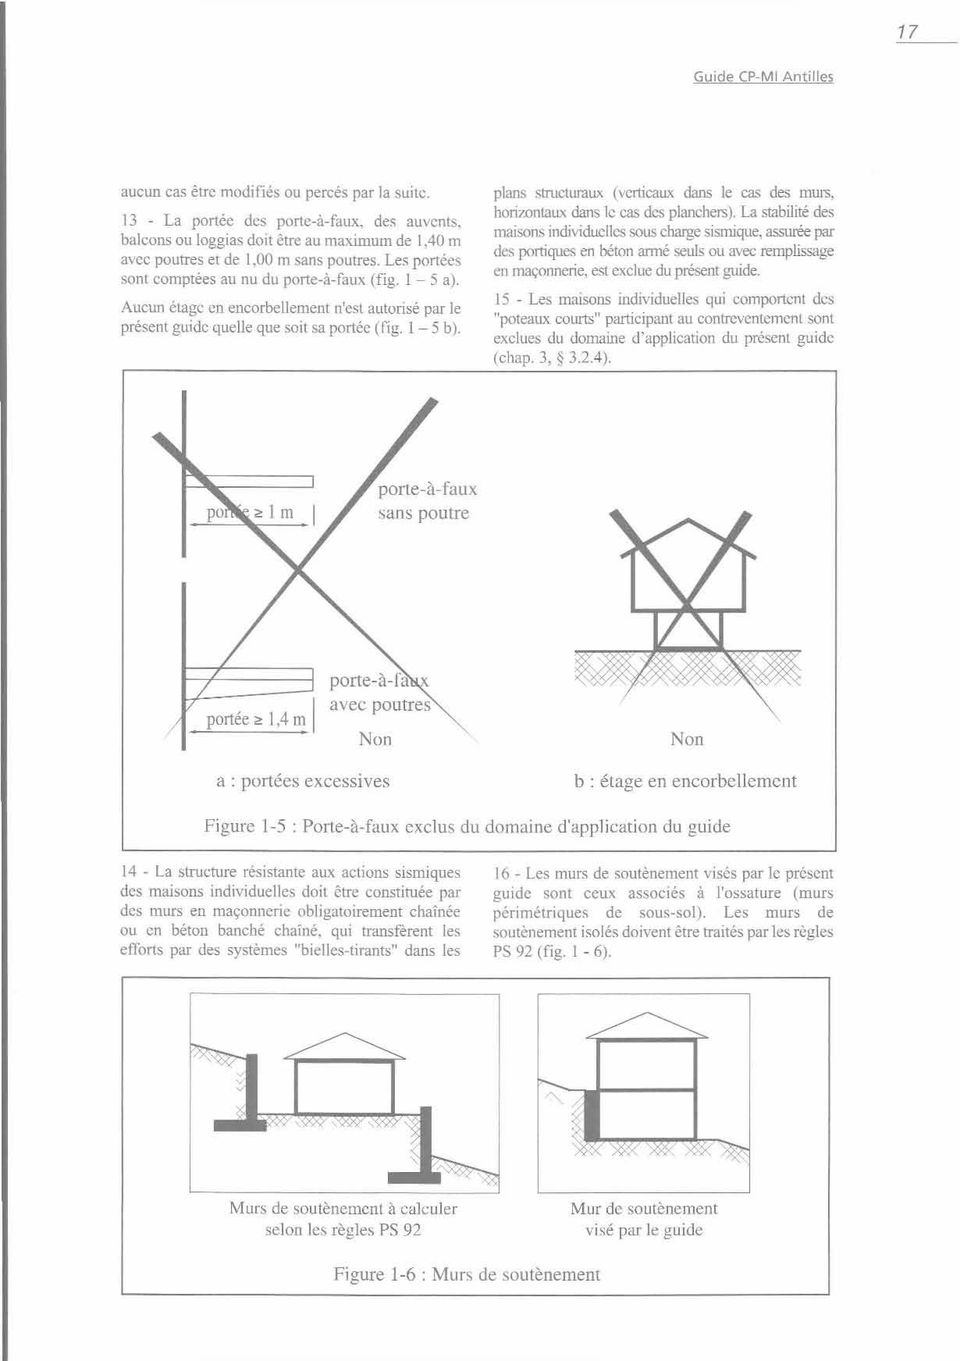 plans structuraux (verticaux dans le cas des murs, horizontaux dans le cas des planchers).